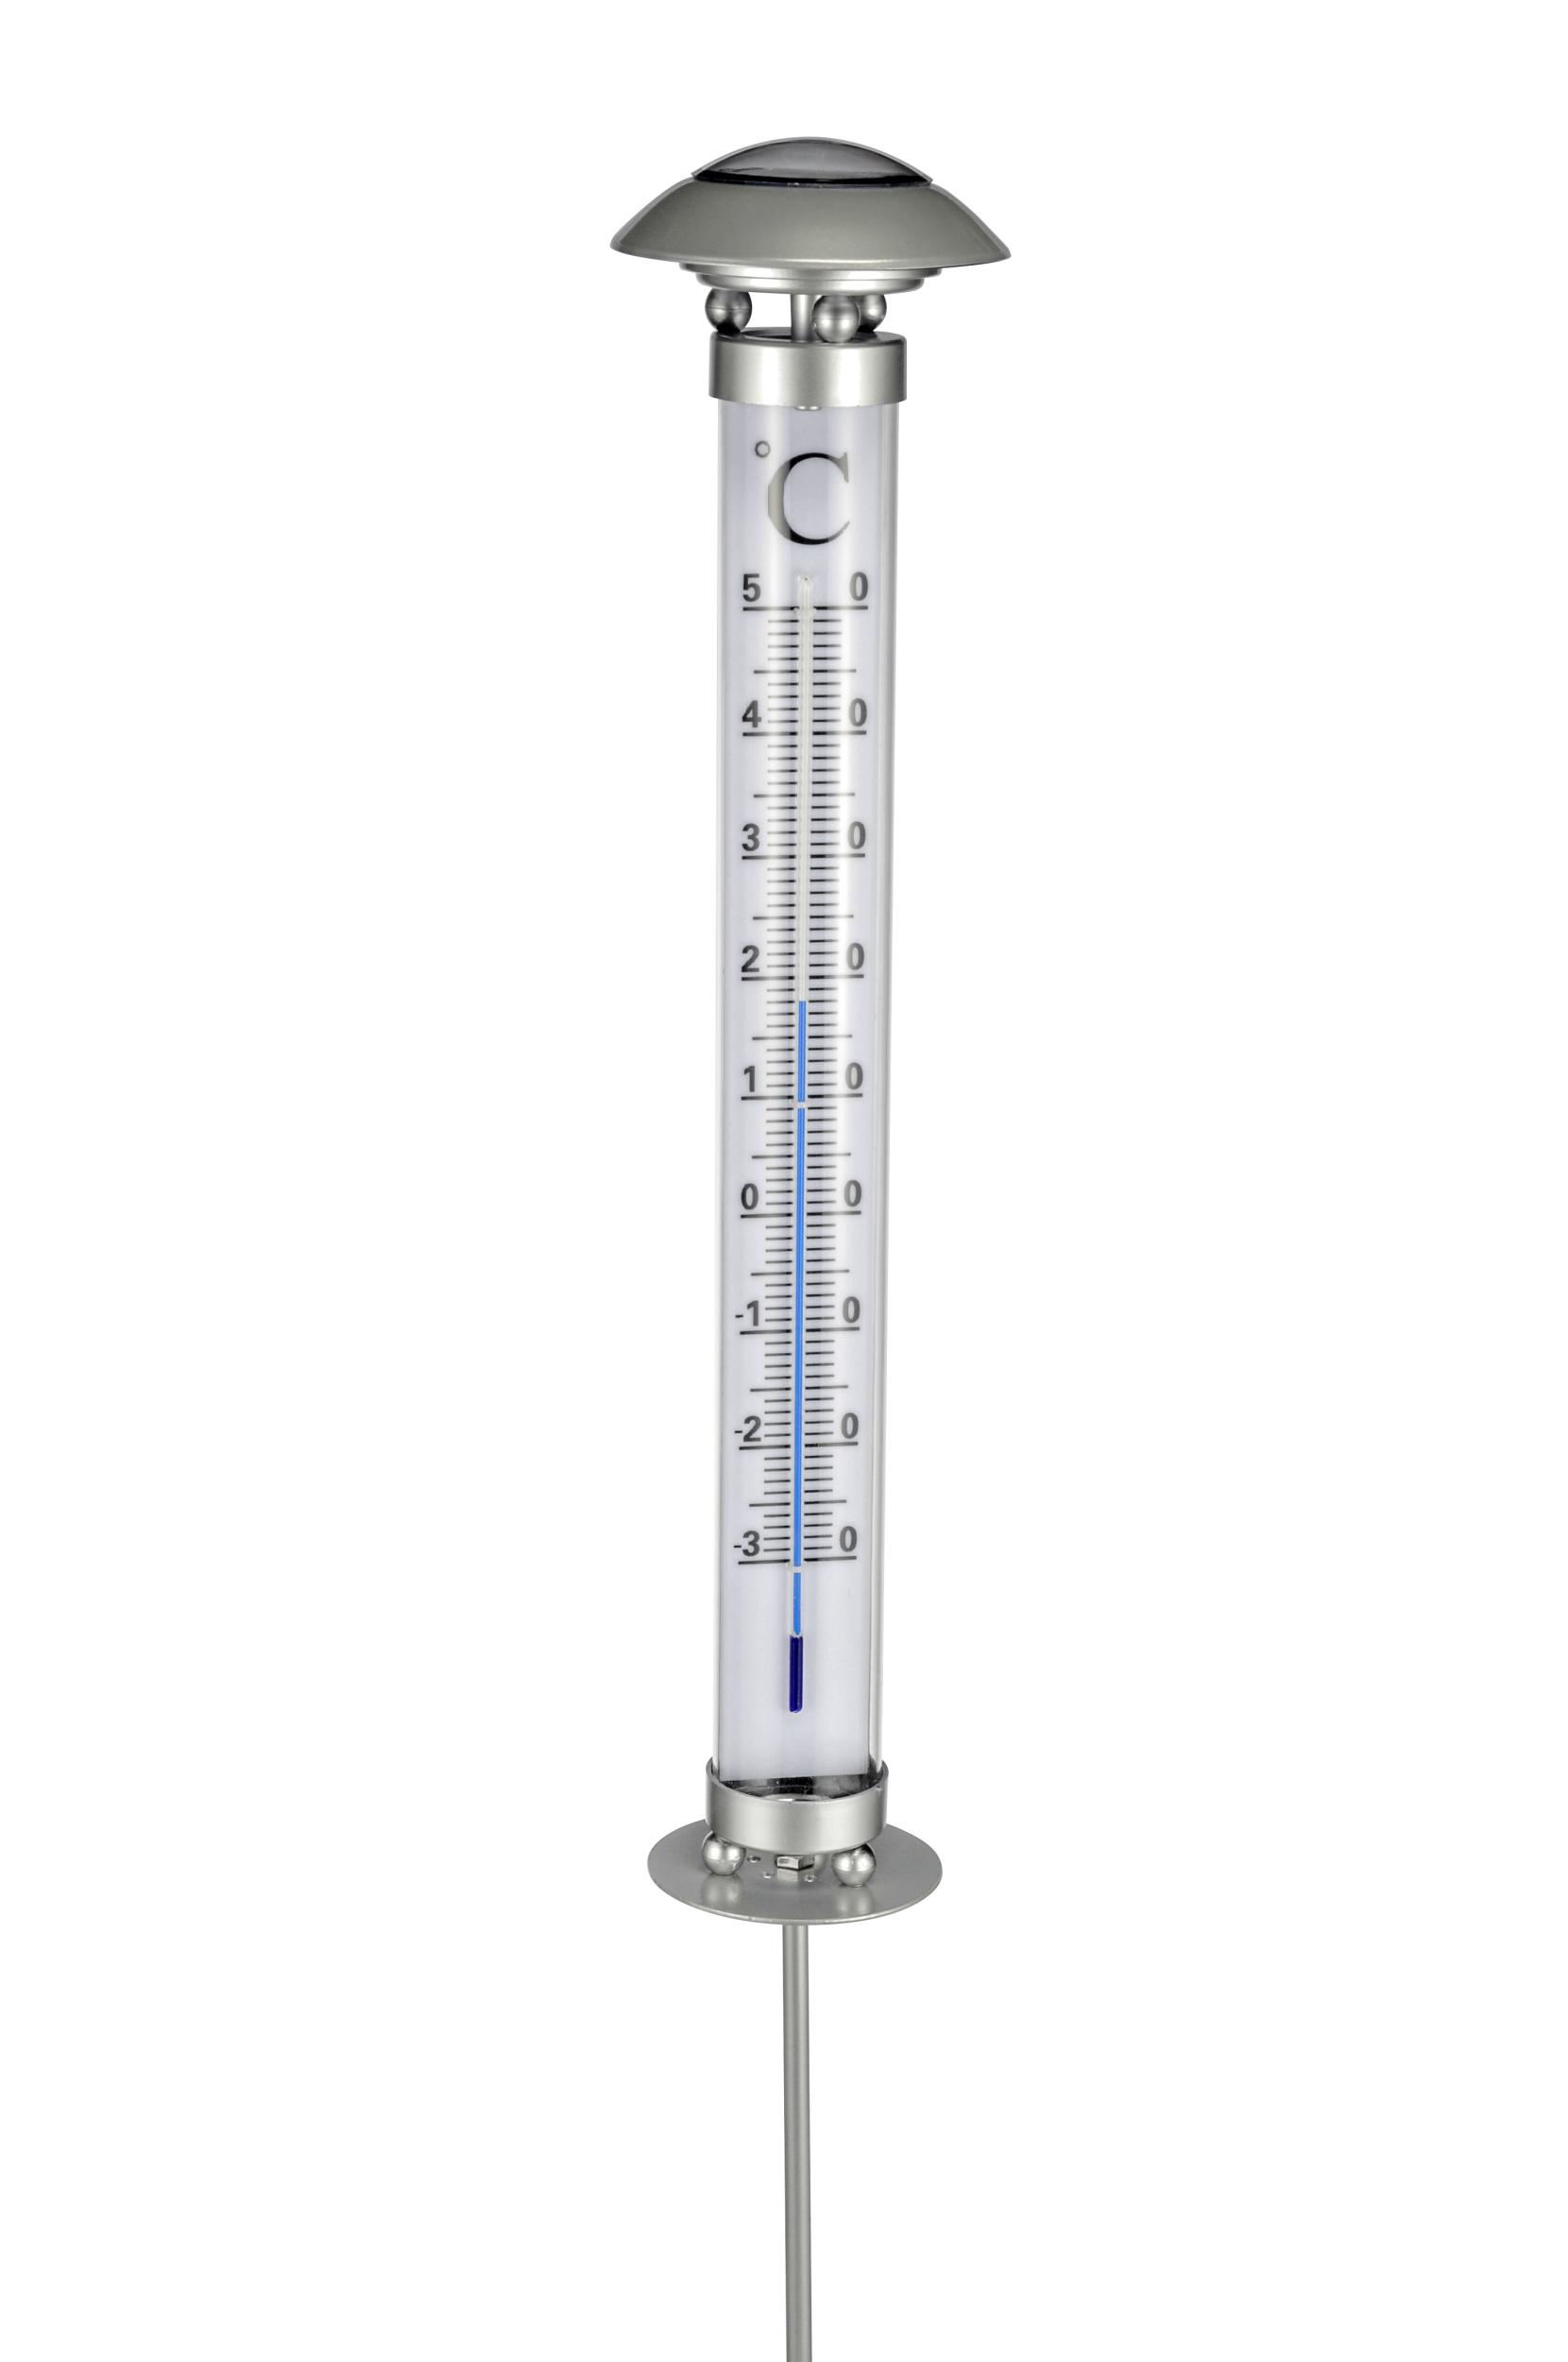 Hi Solar Thermometer